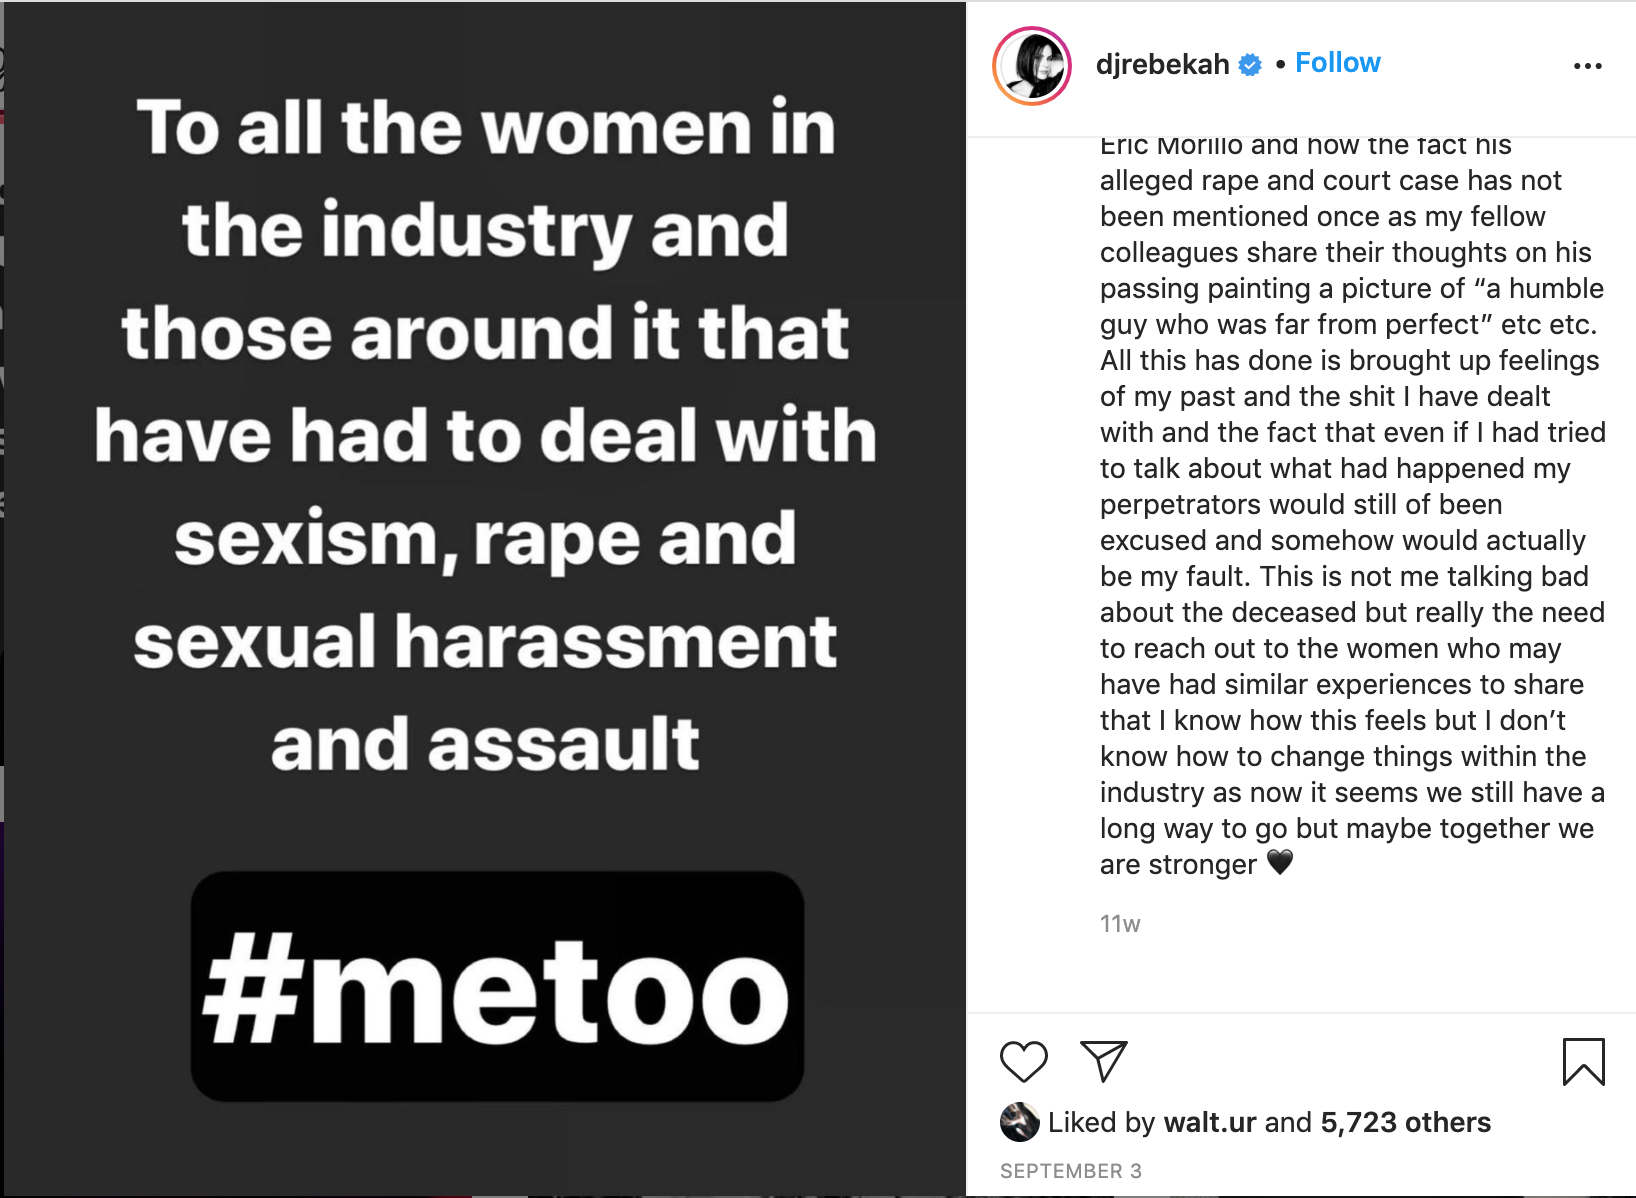 Instagram post van dj Rebekah over seksueel misbruik in de (dans)muziekindustrie.